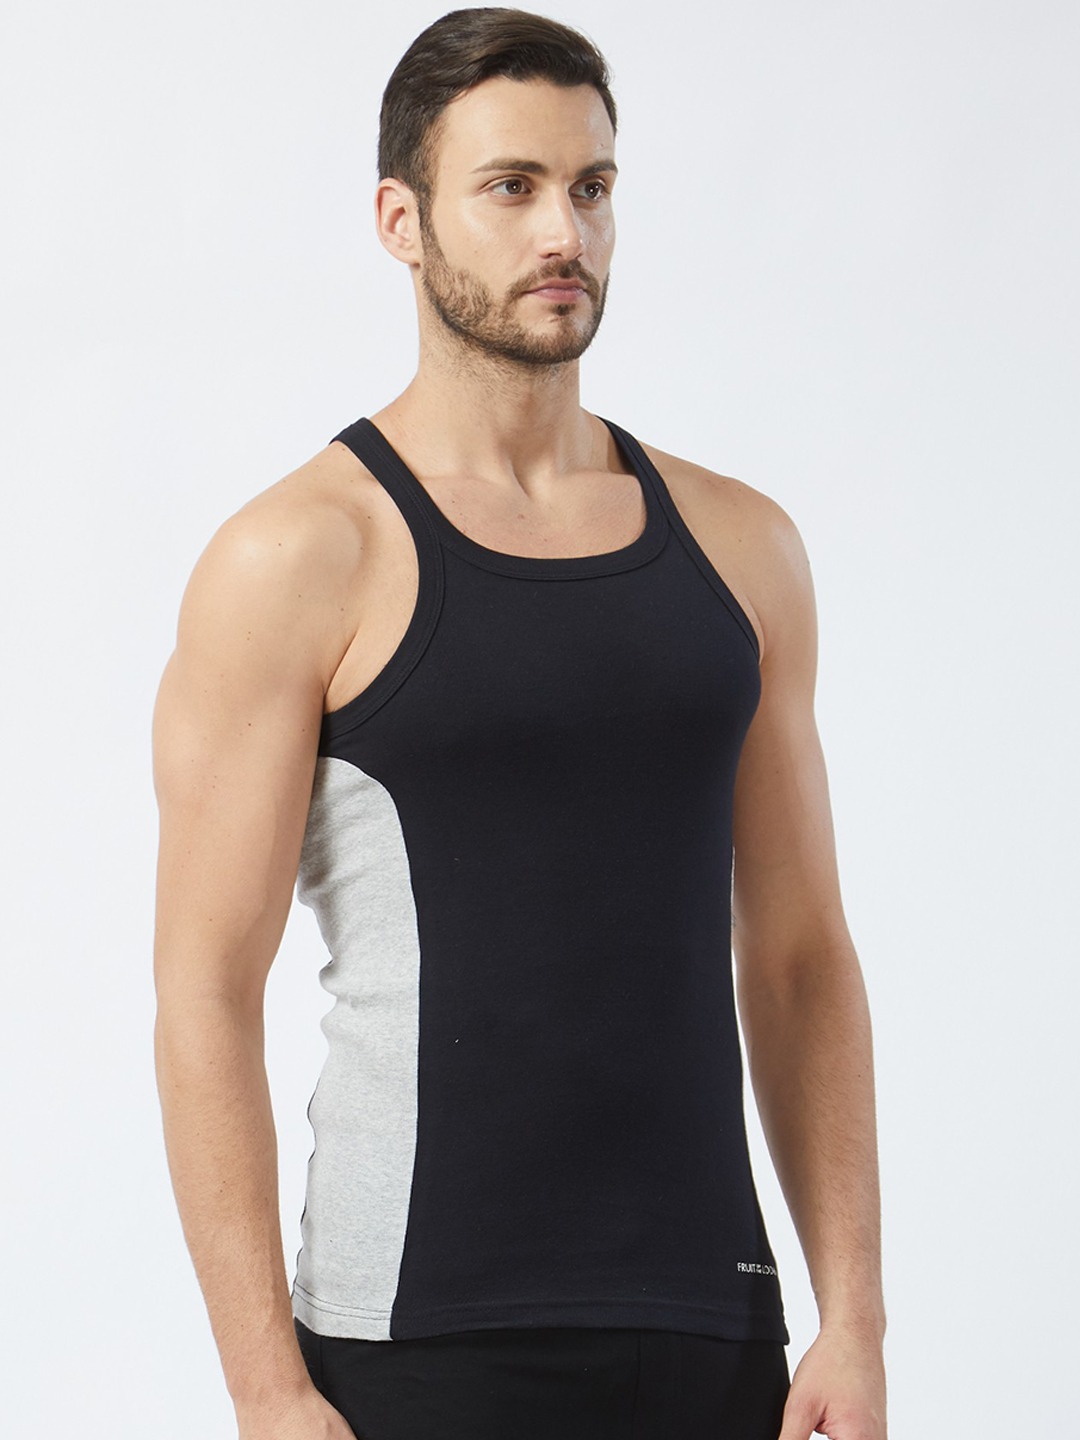 Clothing Innerwear Vests | Fruit of the loom Men Black & Grey Colourblocked Innerwear Vest MFV01-N-A1S2 - YP97315